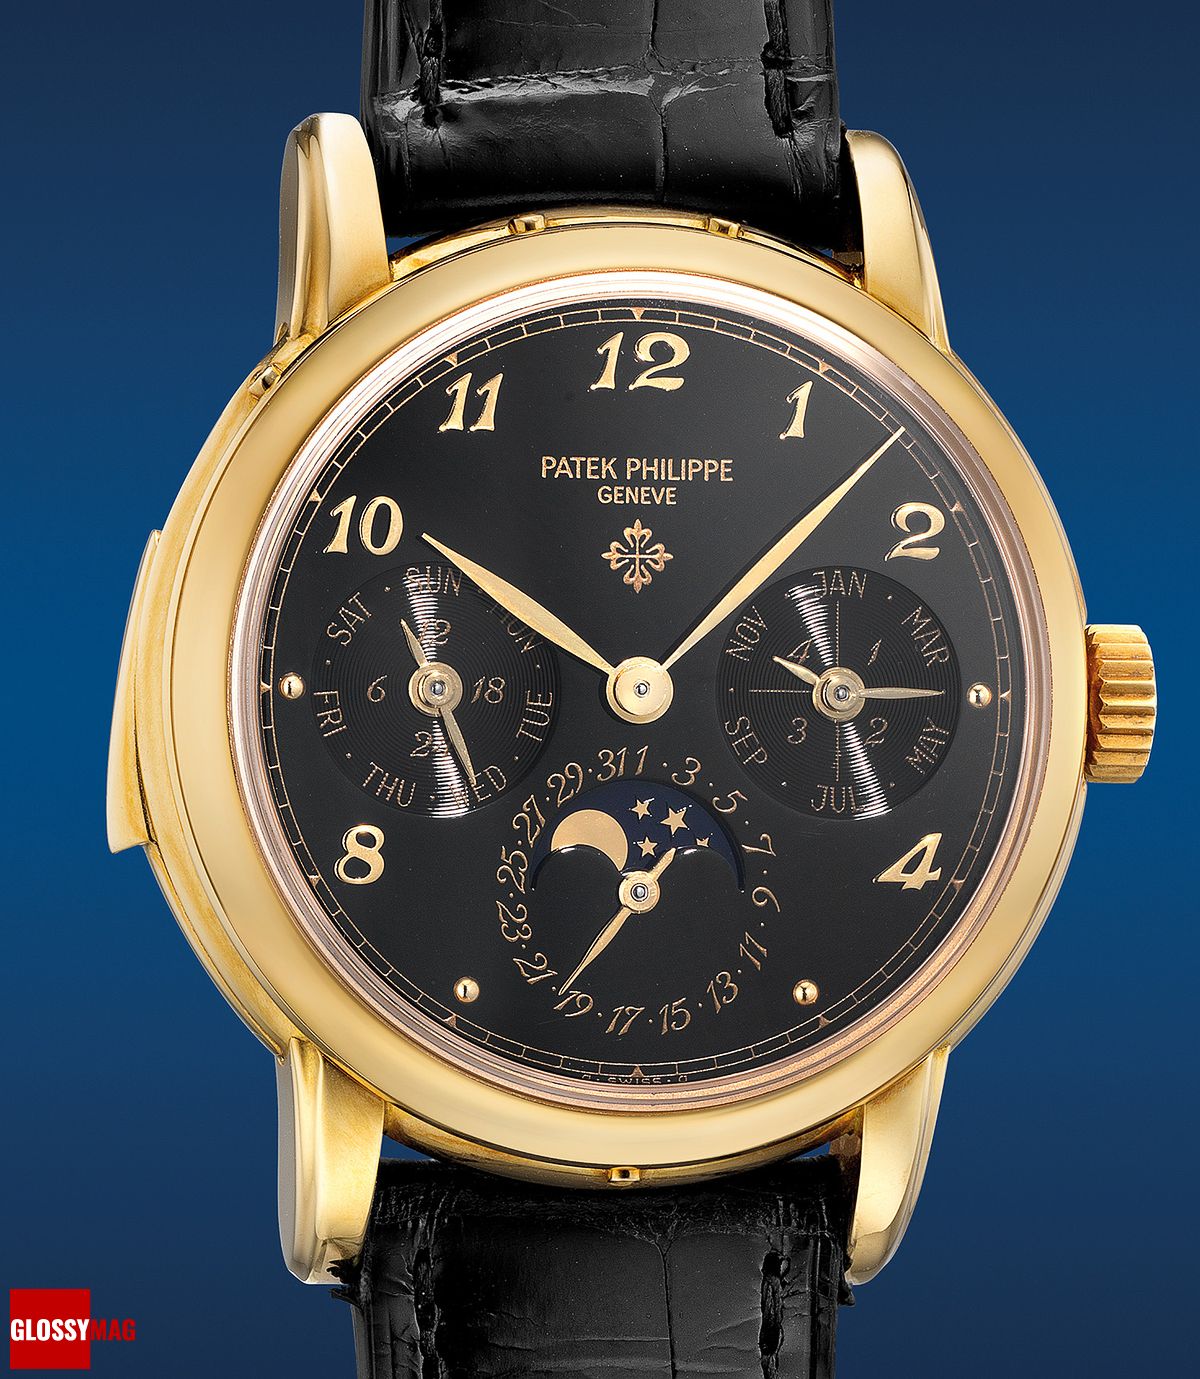 часы Patek Philippe Ref. 3974 в корпусе из желтого золота с минутным репетиром, вечным календарем и индикатором фазы Луны